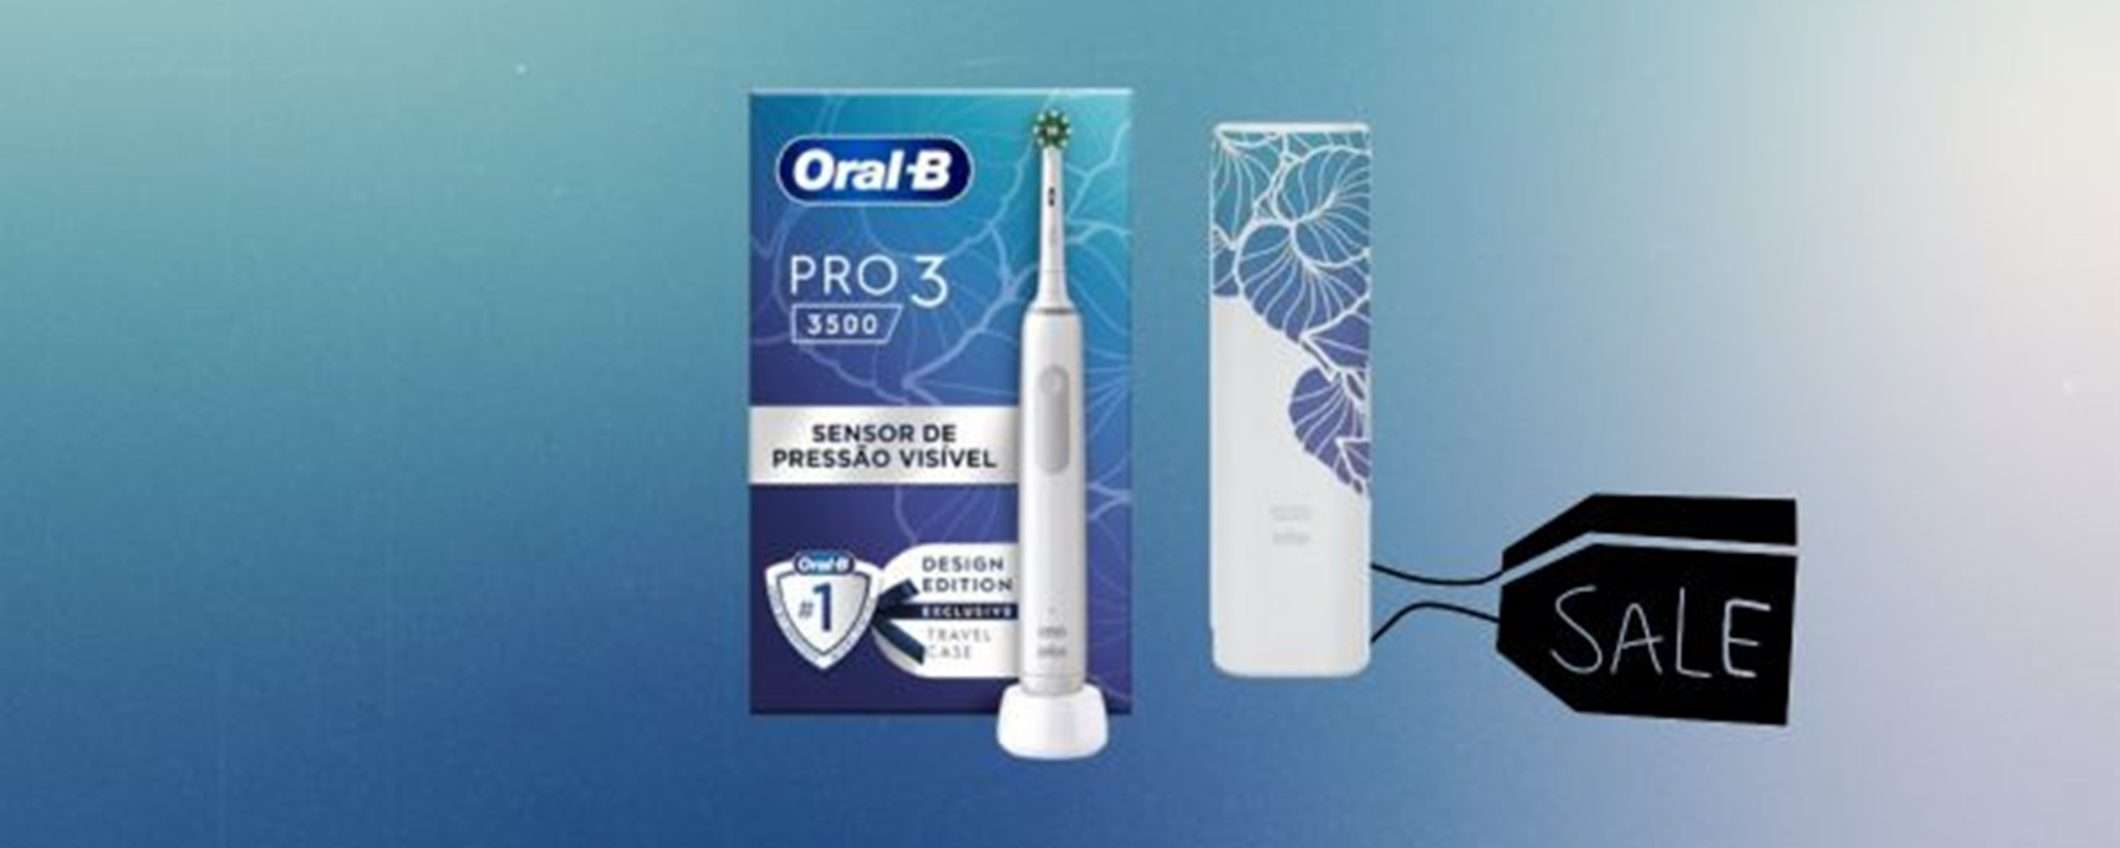 Spazzolino elettrico Oral-B Pro 3 3500N: la migliore igiene orale a soli 44€